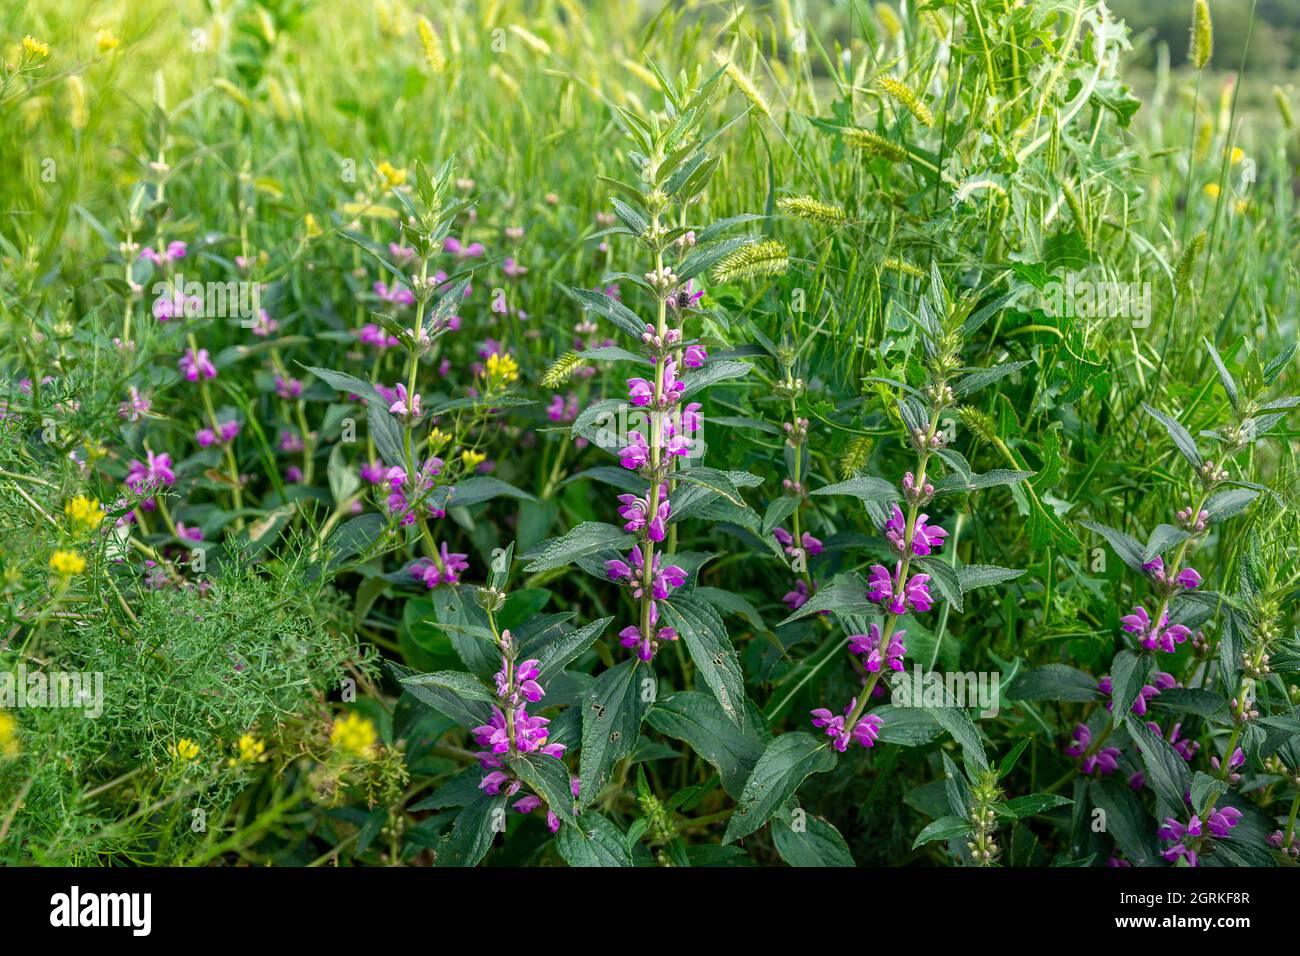 Medicinal plant Zopnik lat. Phlomis tuberosa. Flowering plant in natural  Stock Photo